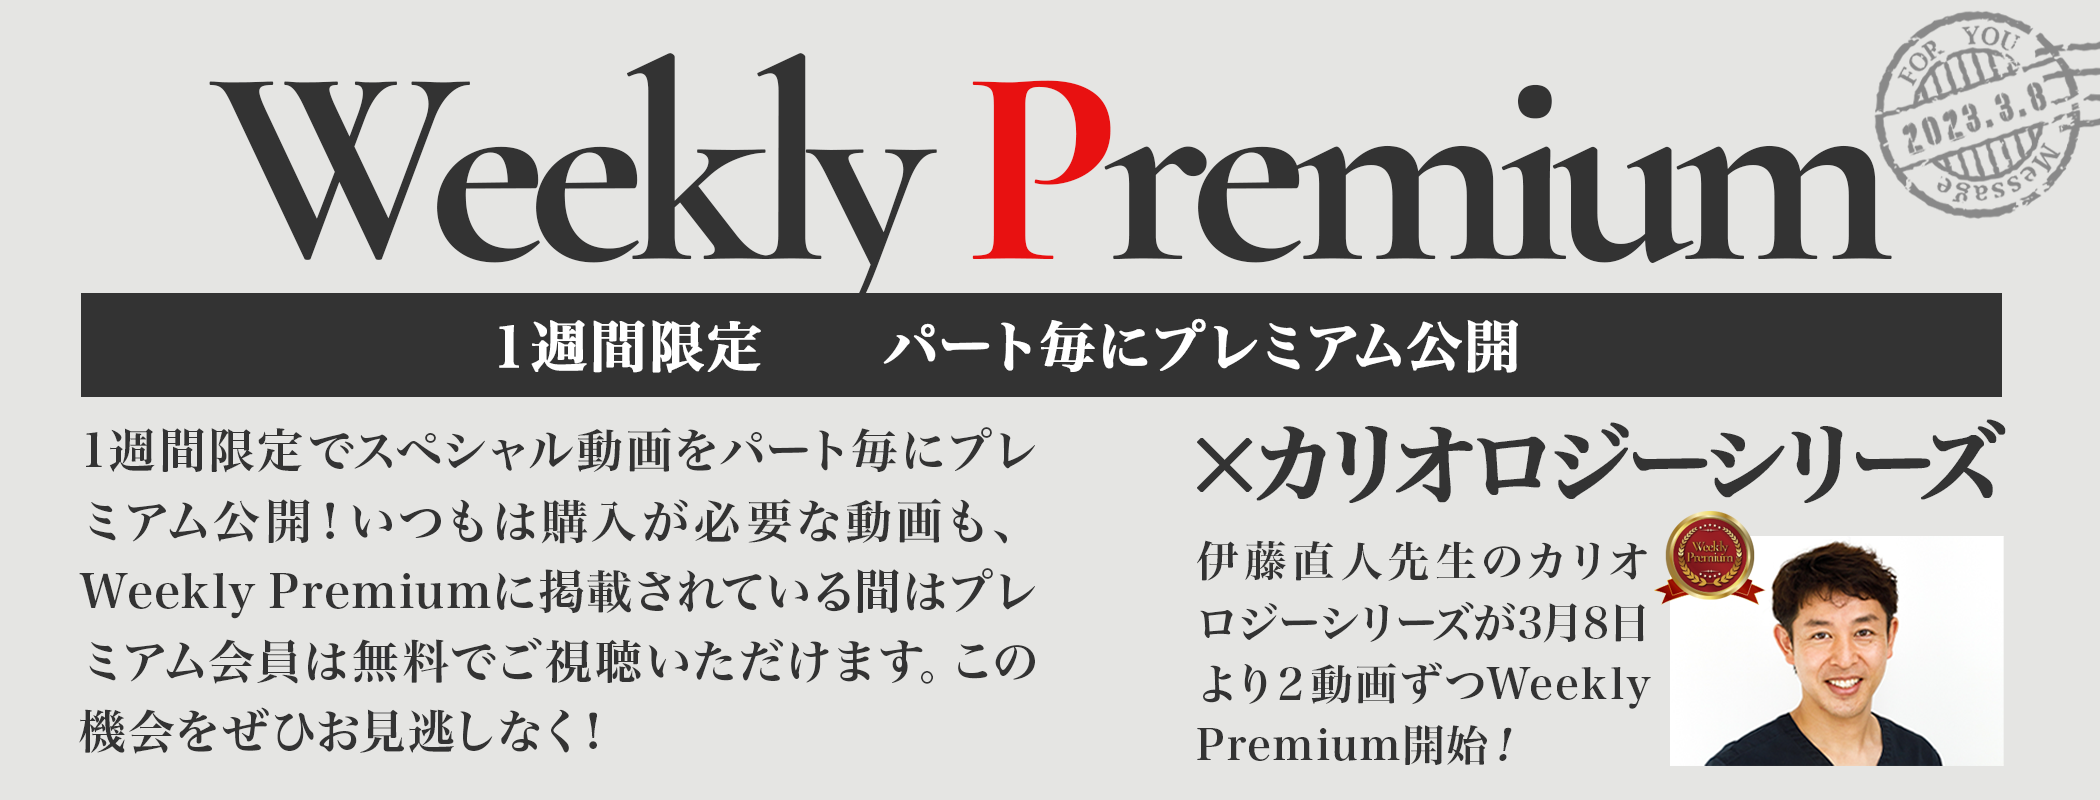 weekly premium